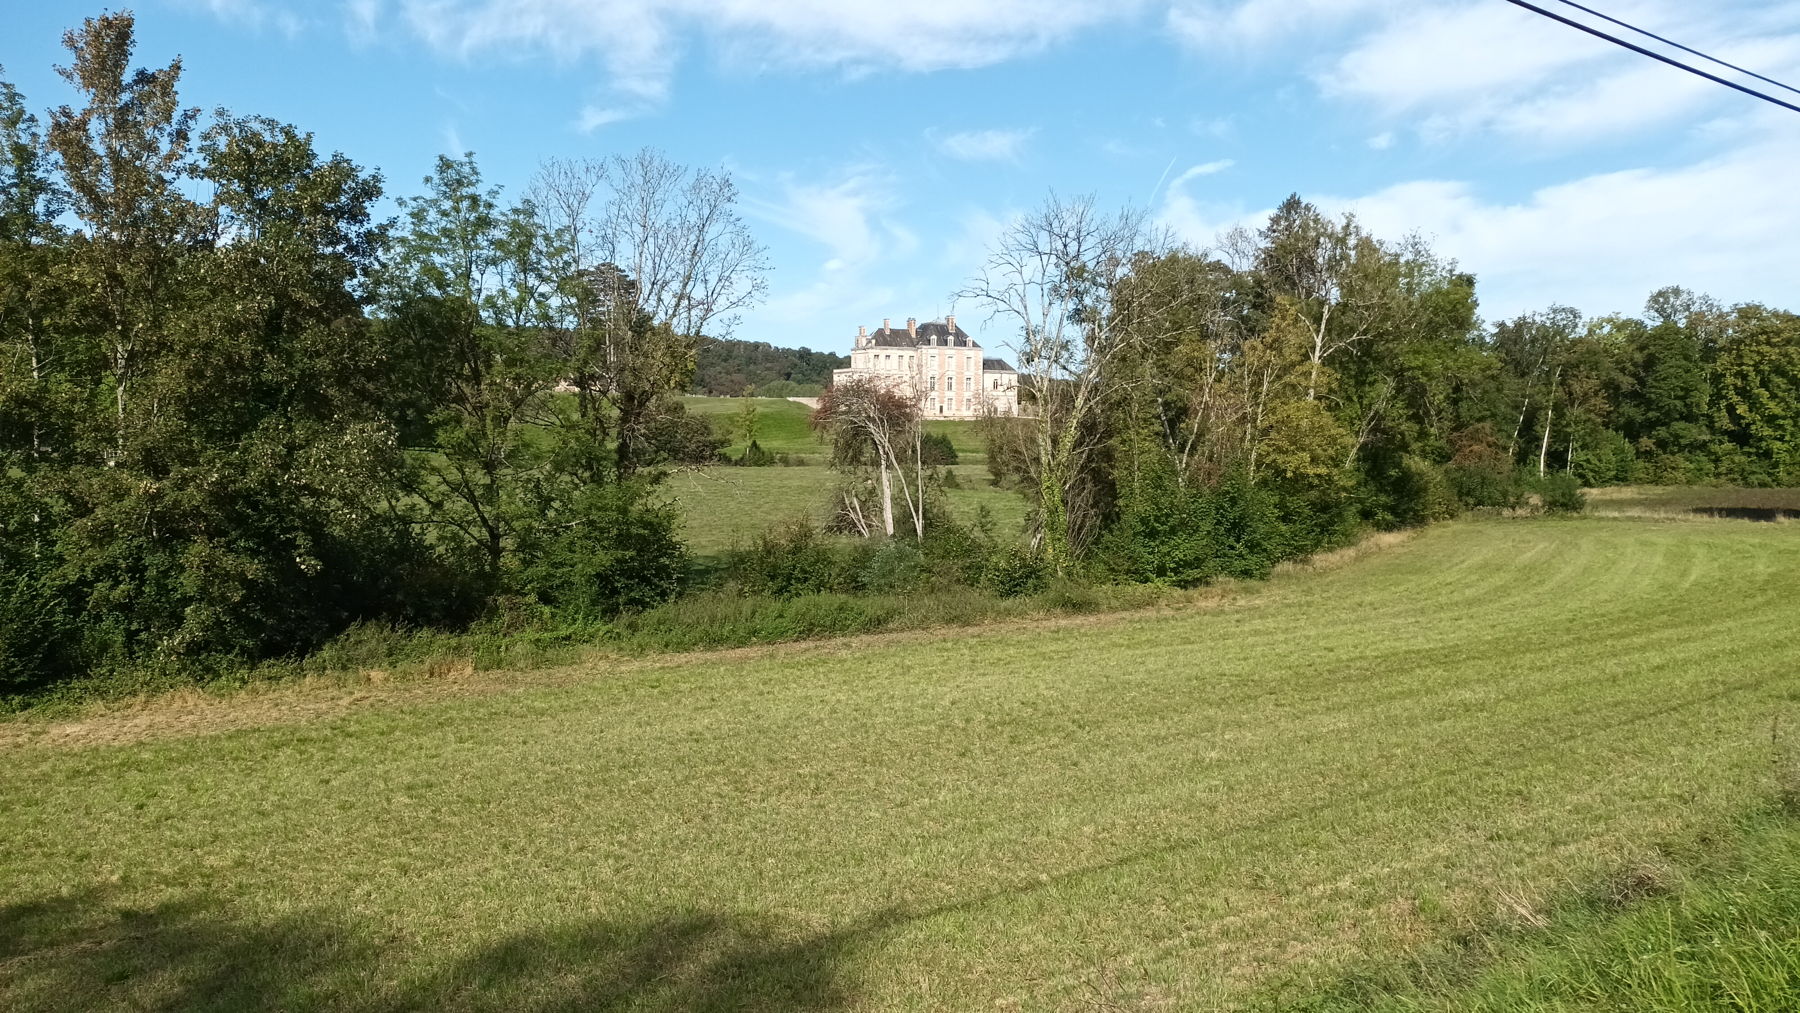 Le château de Cirey sur Blaise
                n'est pas très visible